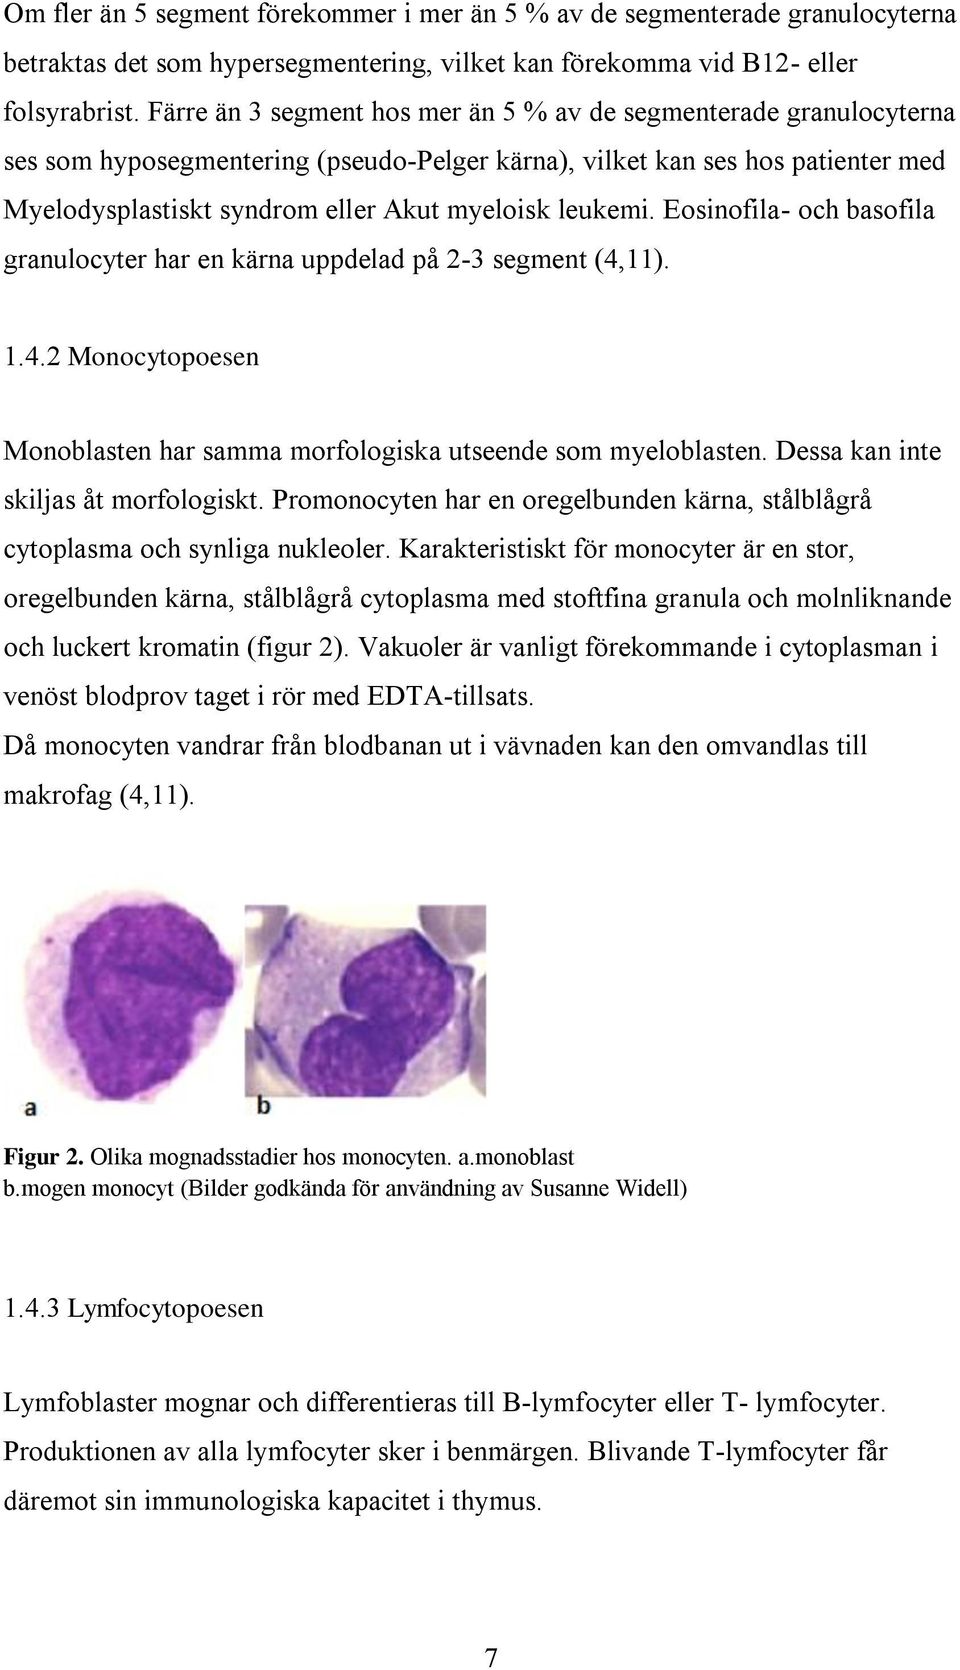 leukemi. Eosinofila- och basofila granulocyter har en kärna uppdelad på 2-3 segment (4,11). 1.4.2 Monocytopoesen Monoblasten har samma morfologiska utseende som myeloblasten.